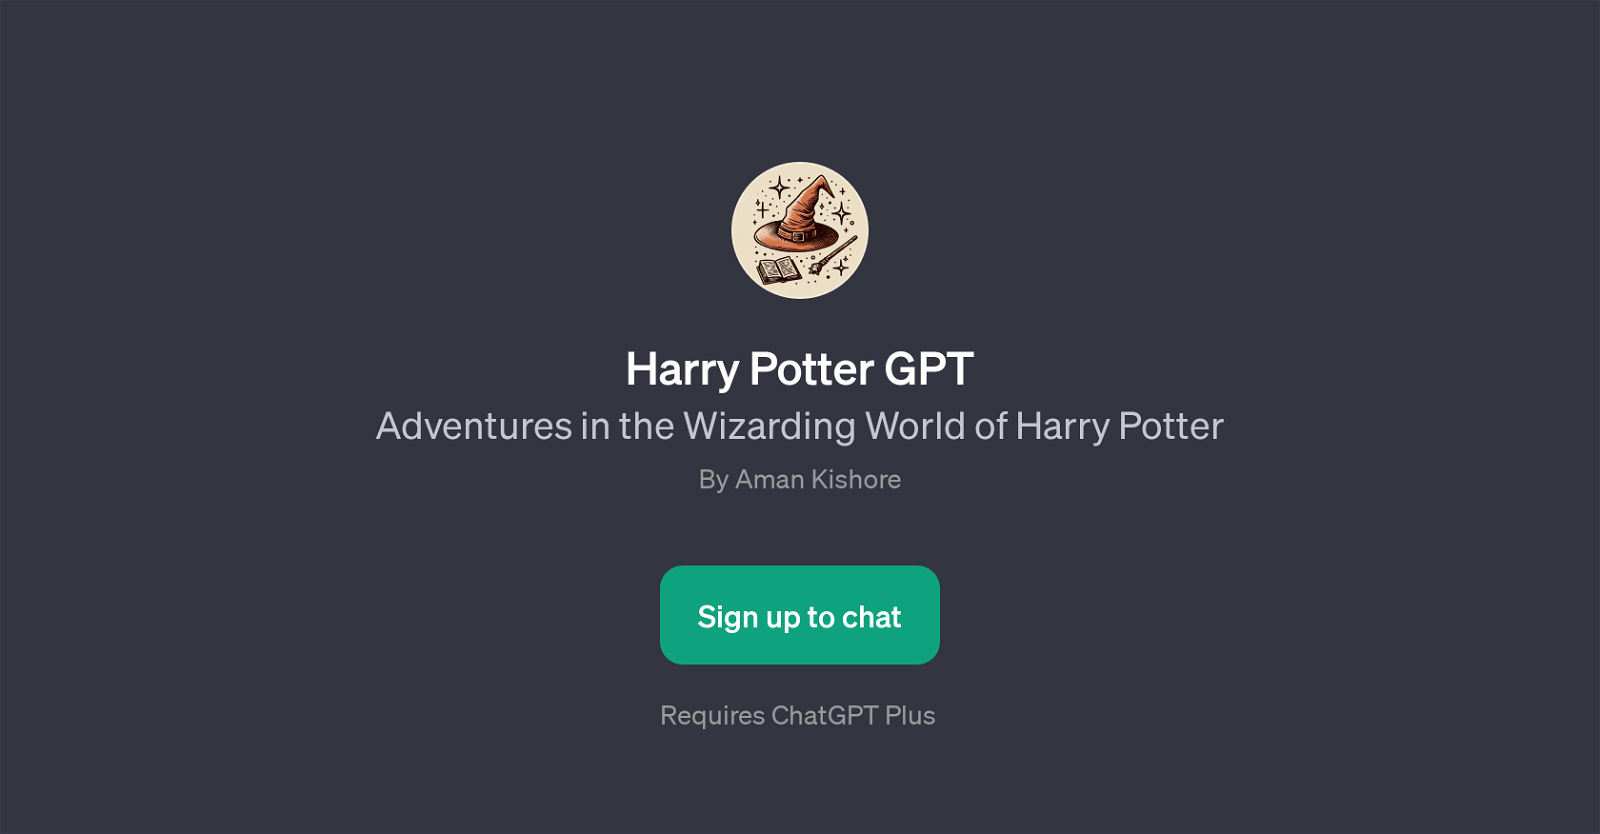 Harry Potter GPT website